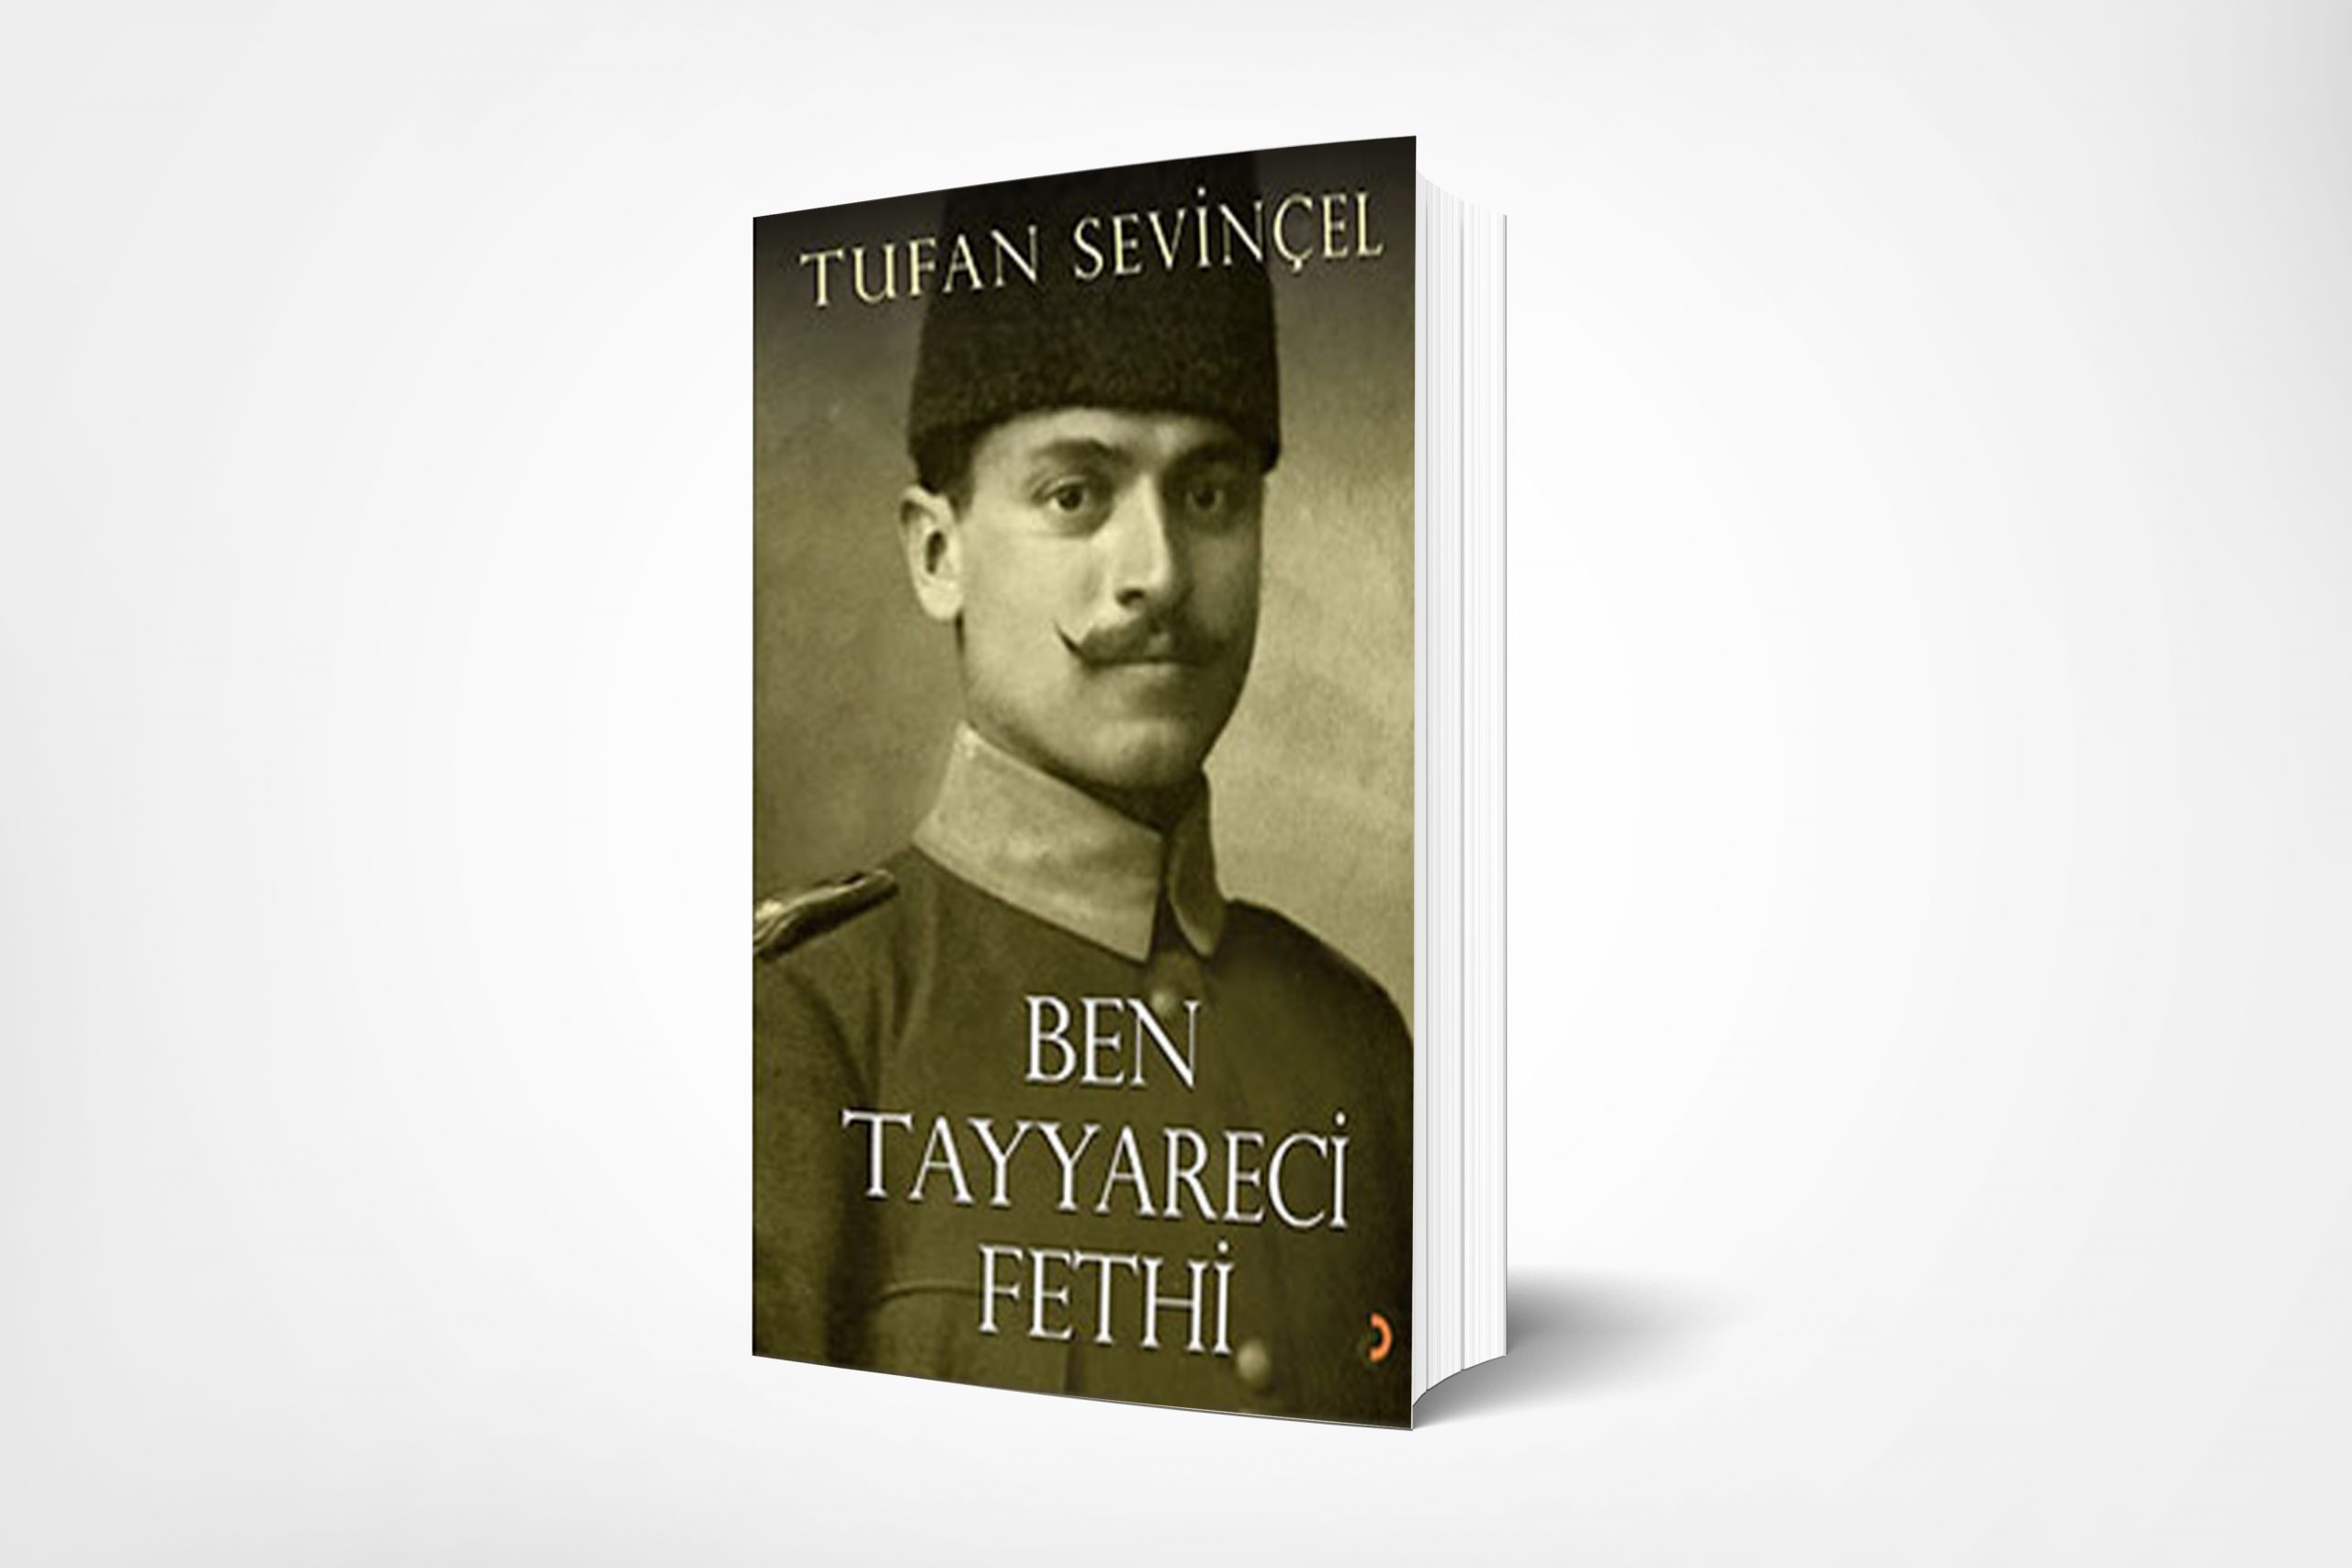 Ben Tayyareci Fethi (I am Aeroplanist Fethi)